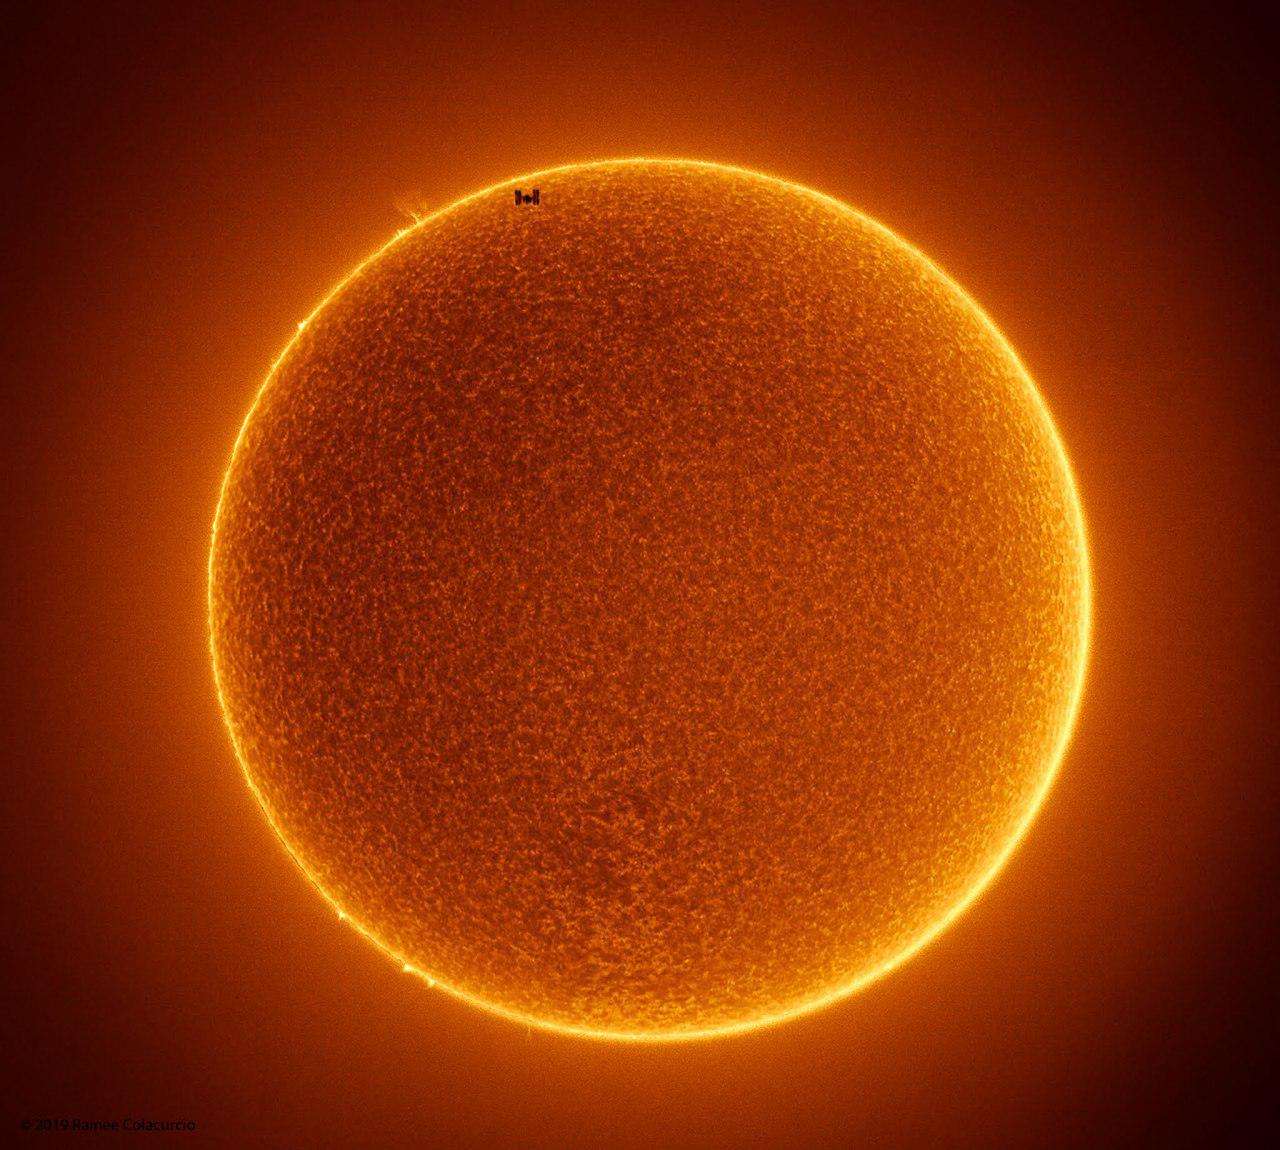 تاریکی در خورشید -- تصویر نجومی روز